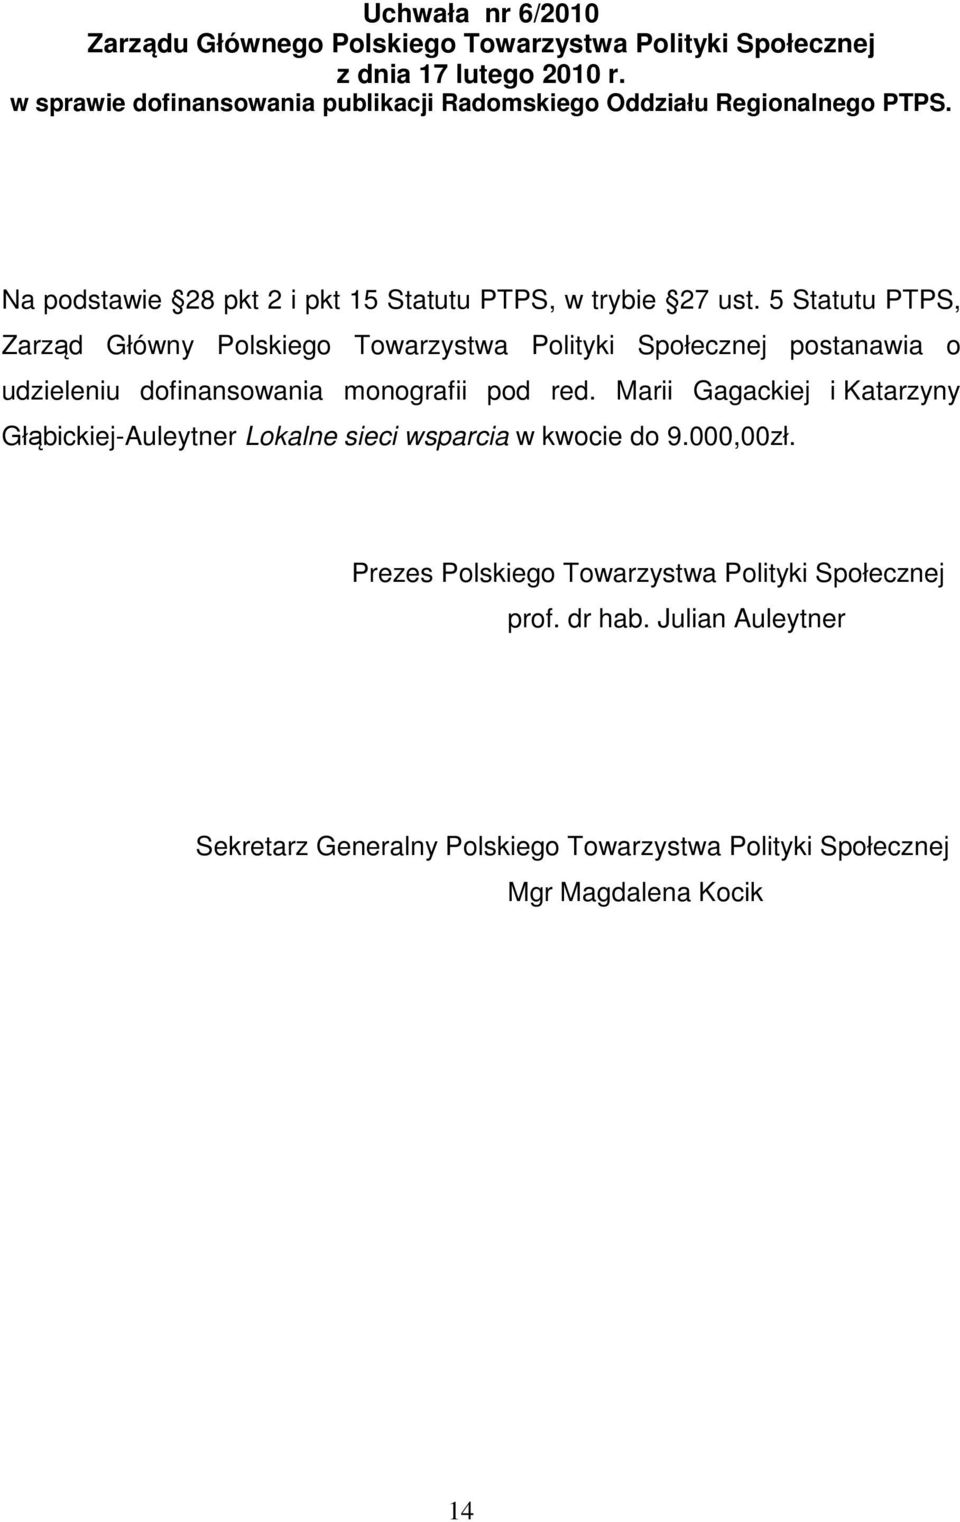 5 Statutu PTPS, Zarząd Główny Polskiego Towarzystwa Polityki Społecznej postanawia o udzieleniu dofinansowania monografii